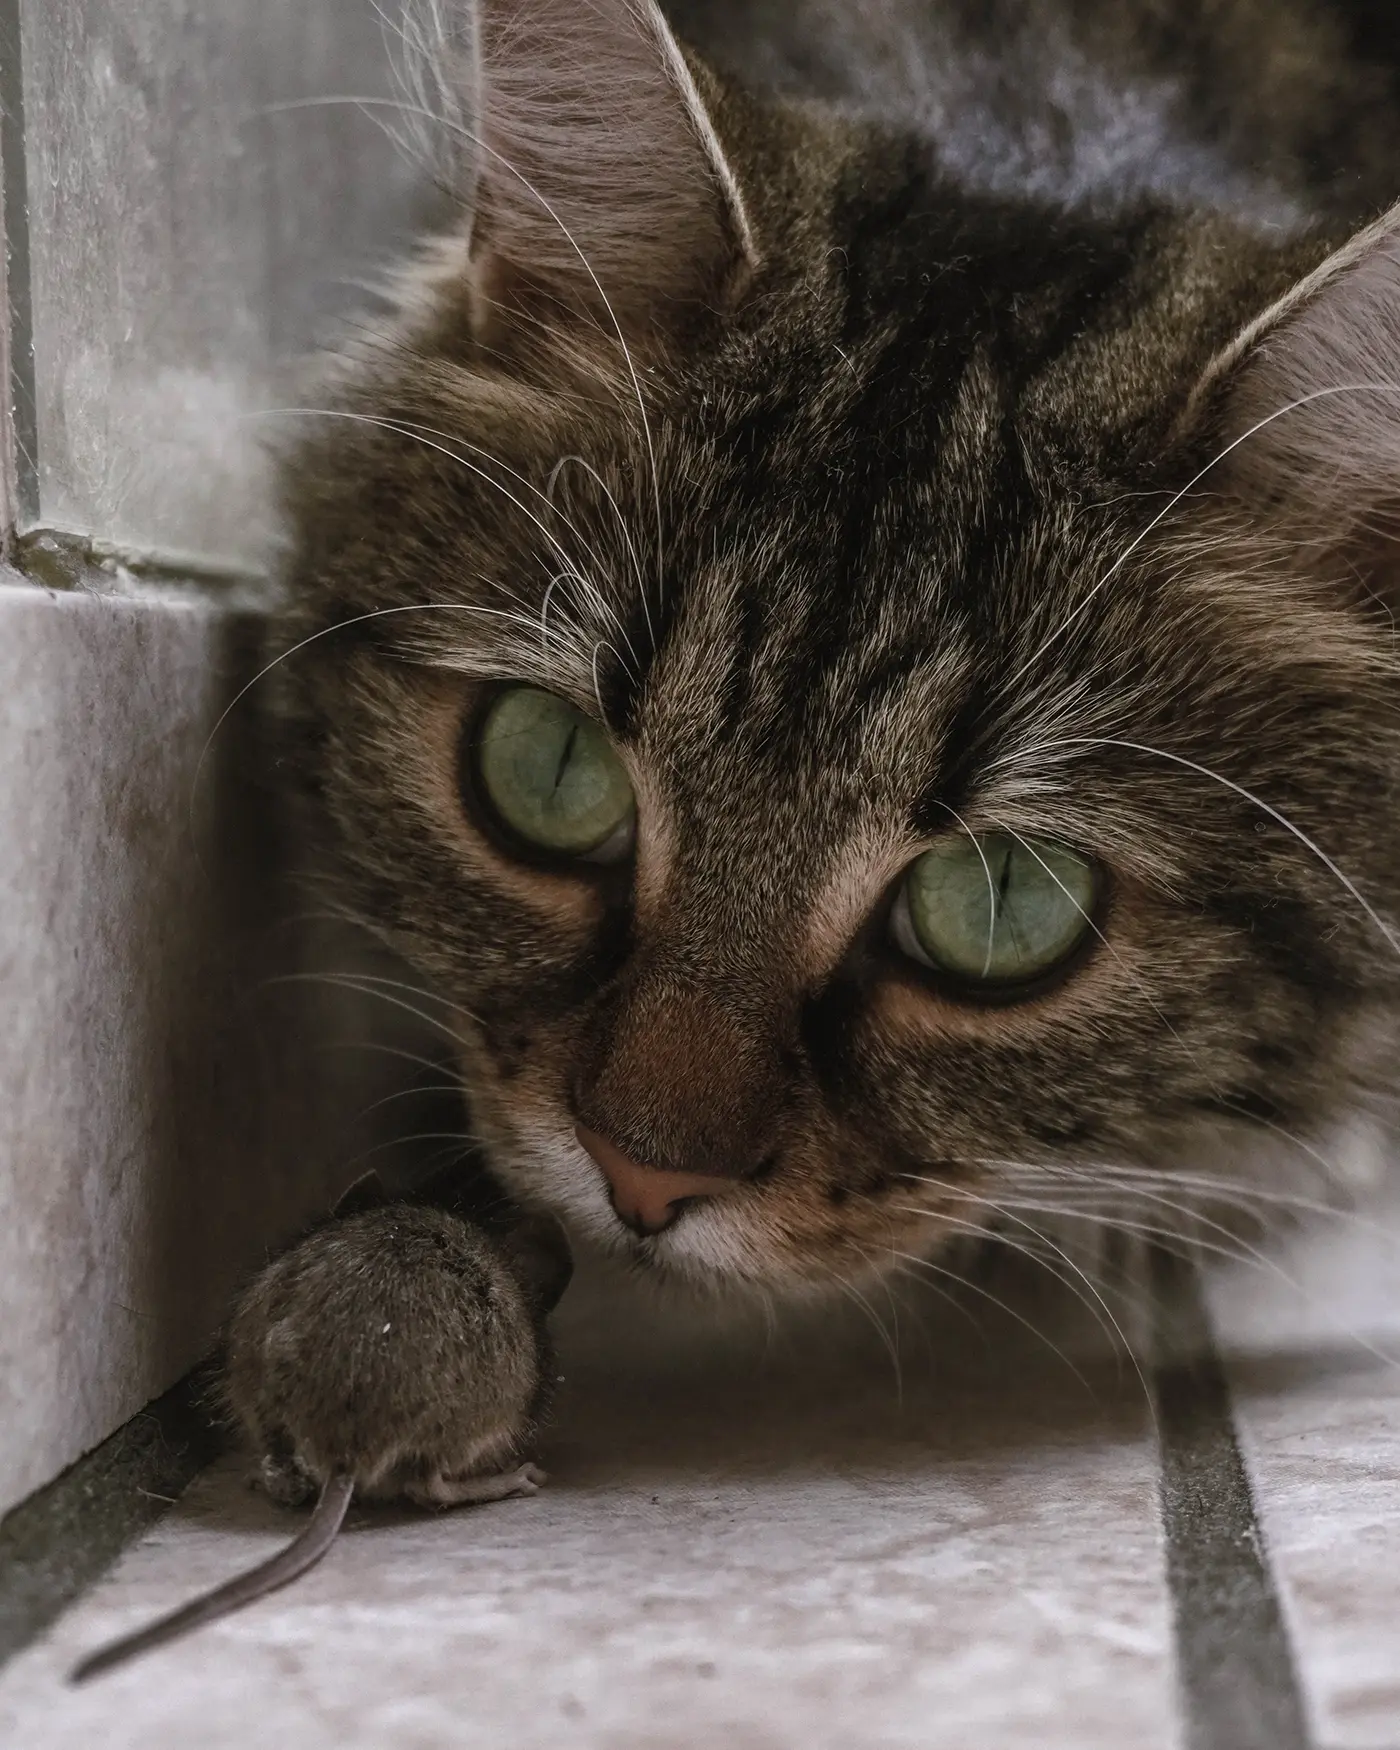 Γιατί οι γάτες φέρνουν ποντίκια ή πουλιά, ζωντανές σαύρες ή παιχνίδια στους ιδιοκτήτες τους;